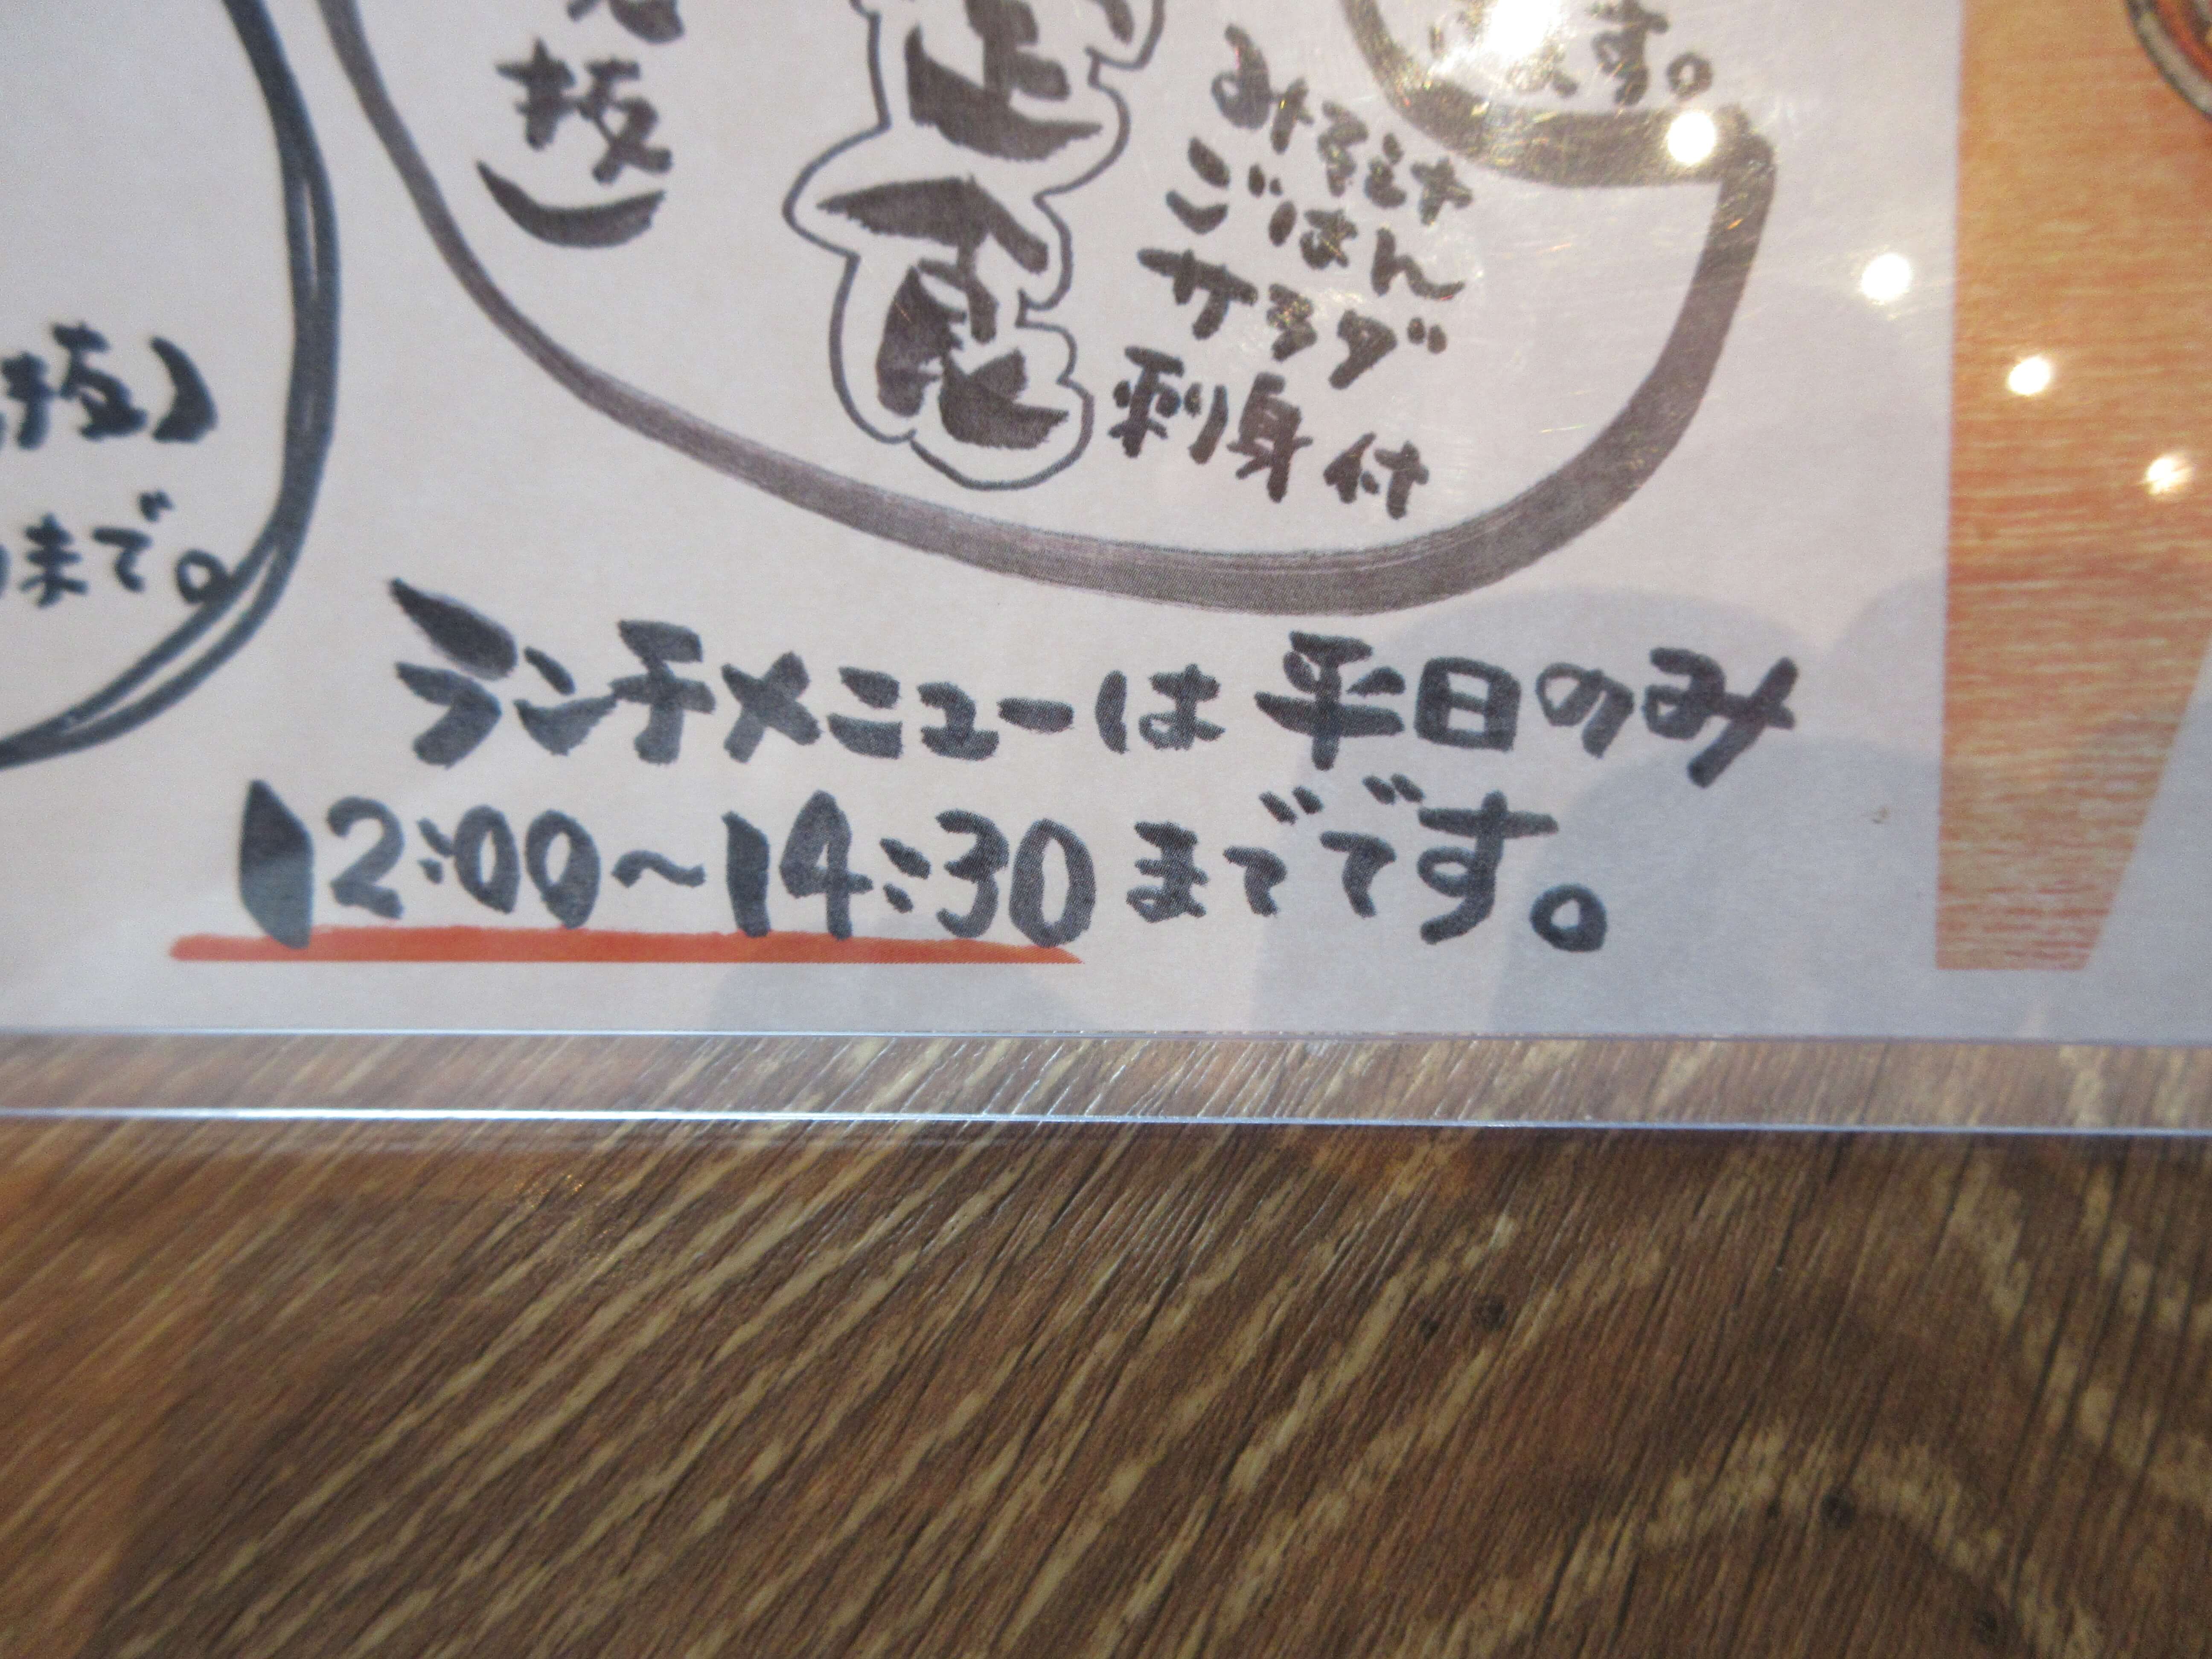 大衆酒場 富士山(ふじやま)のランチメニューは12:00〜14:30まで提供